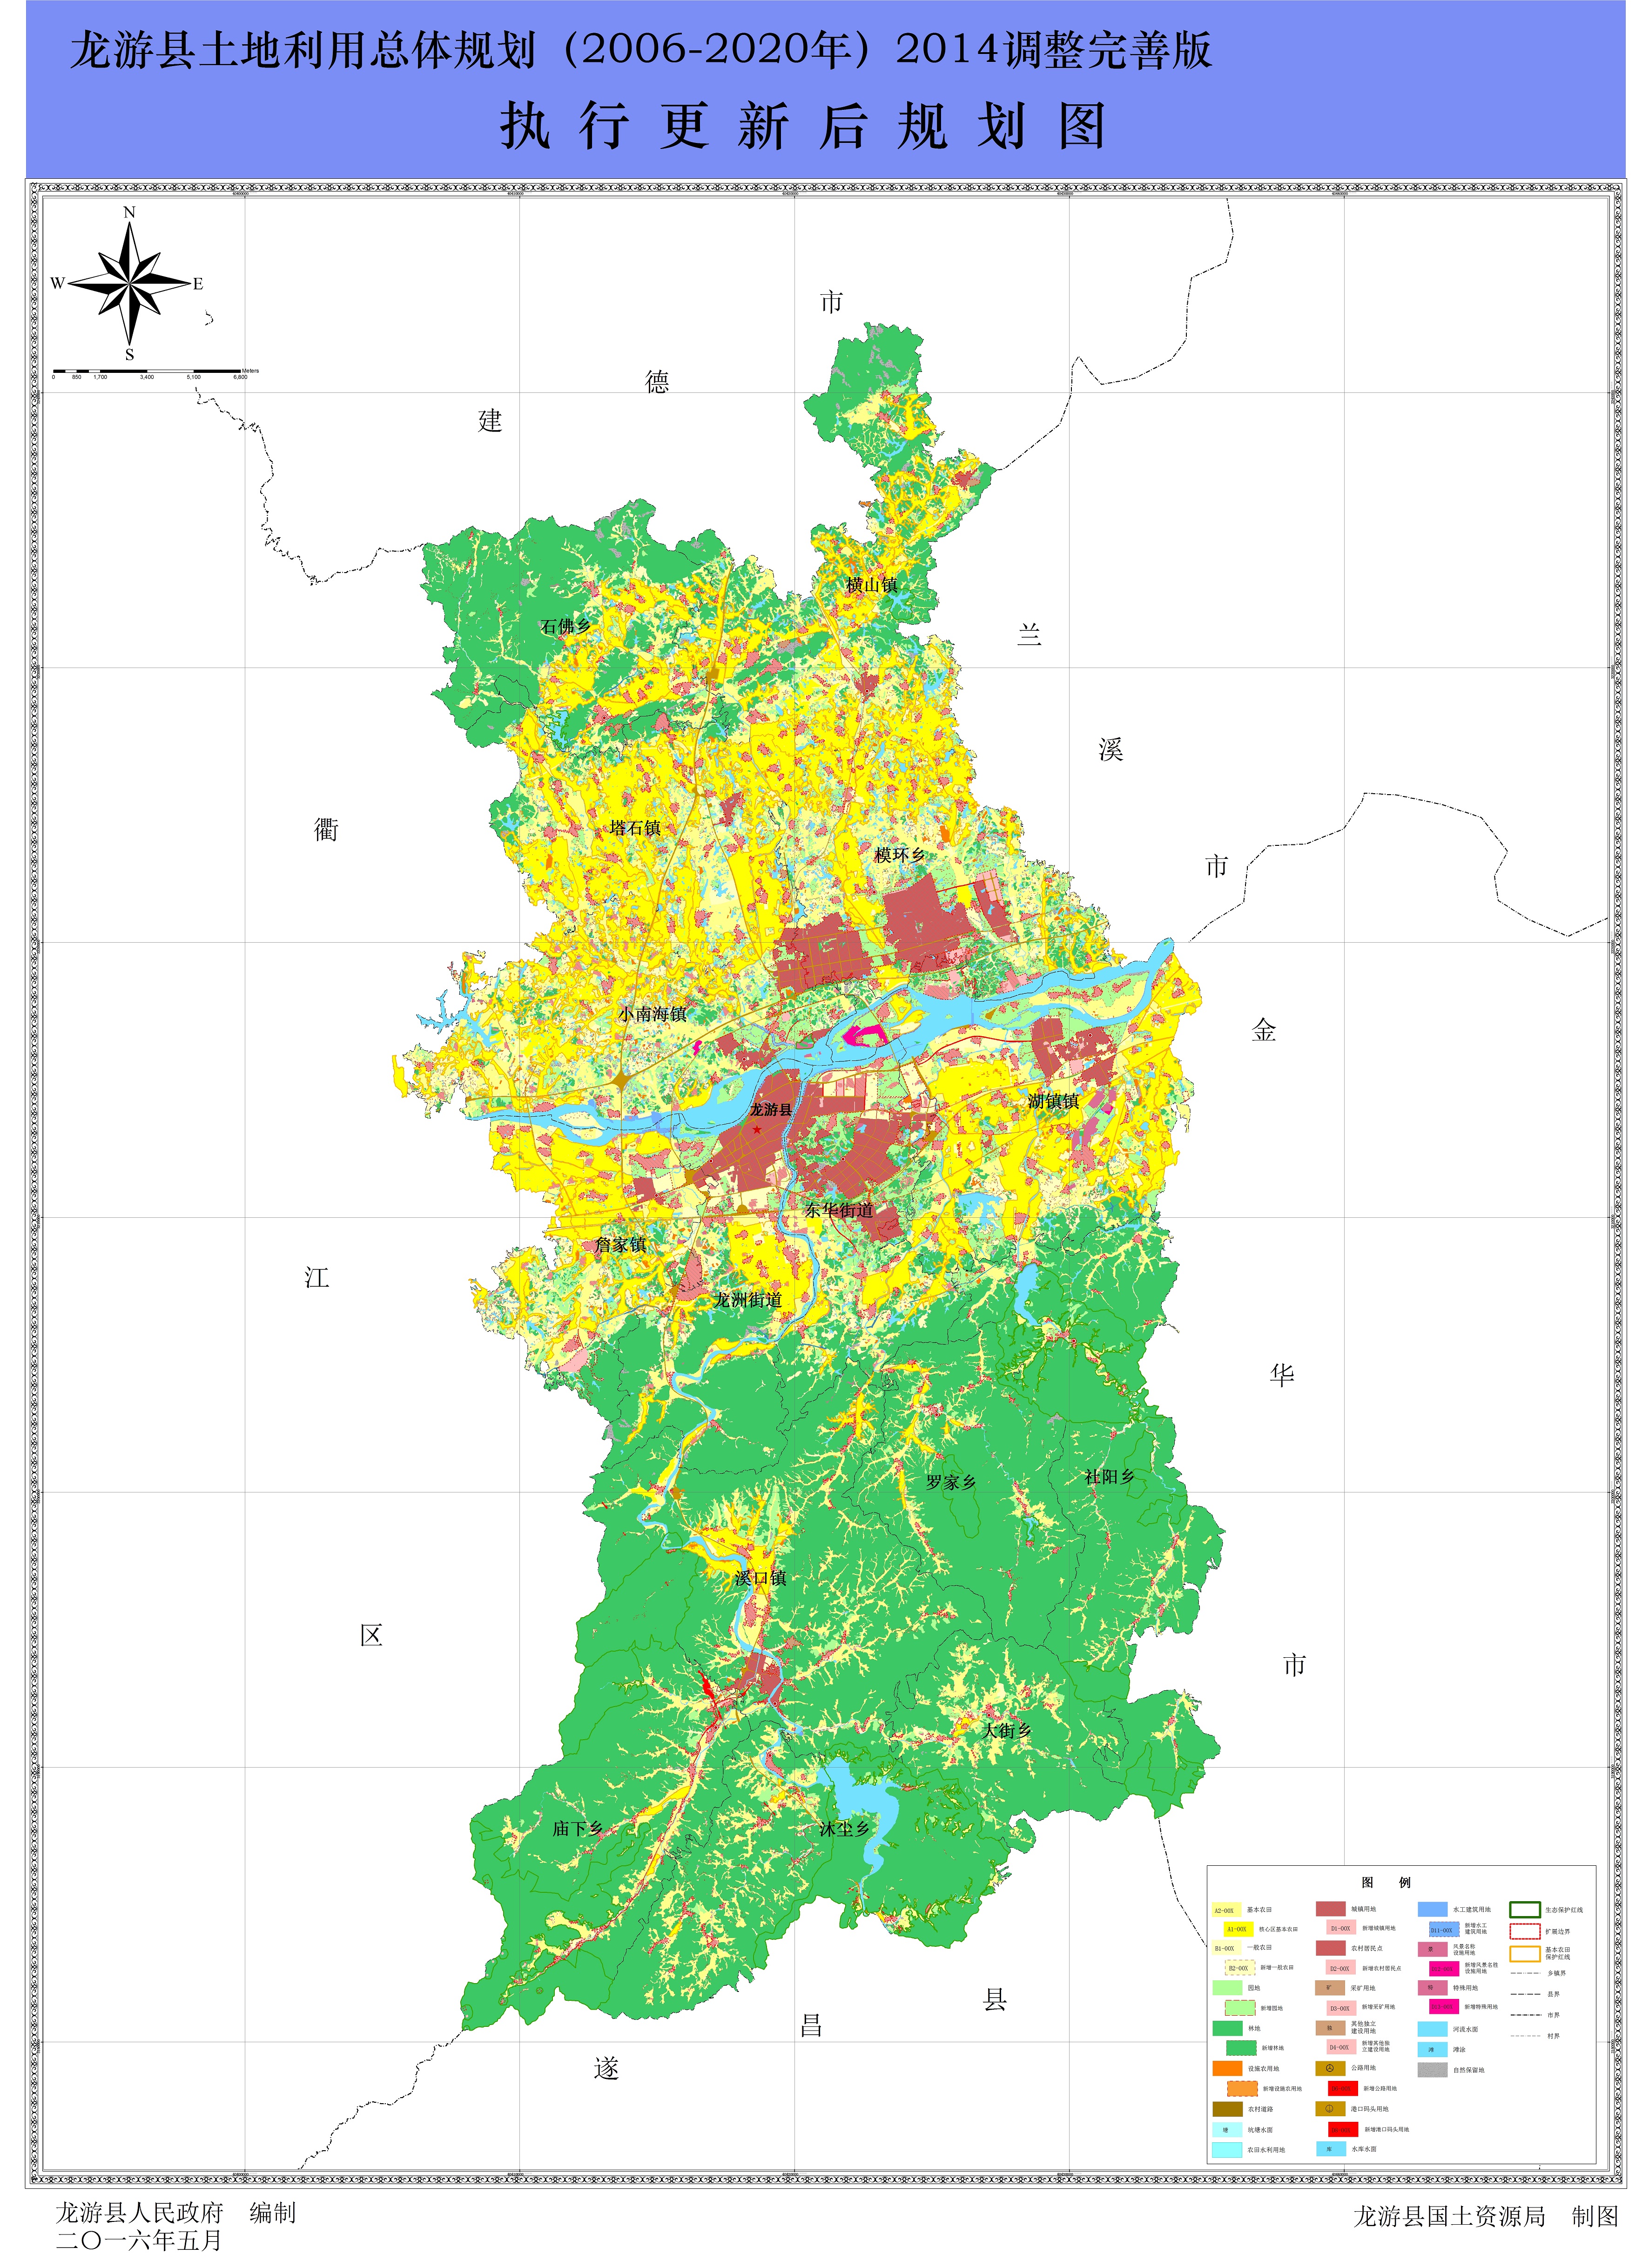 龙游县土地利用总体规划(2006-2020)执行更新图片